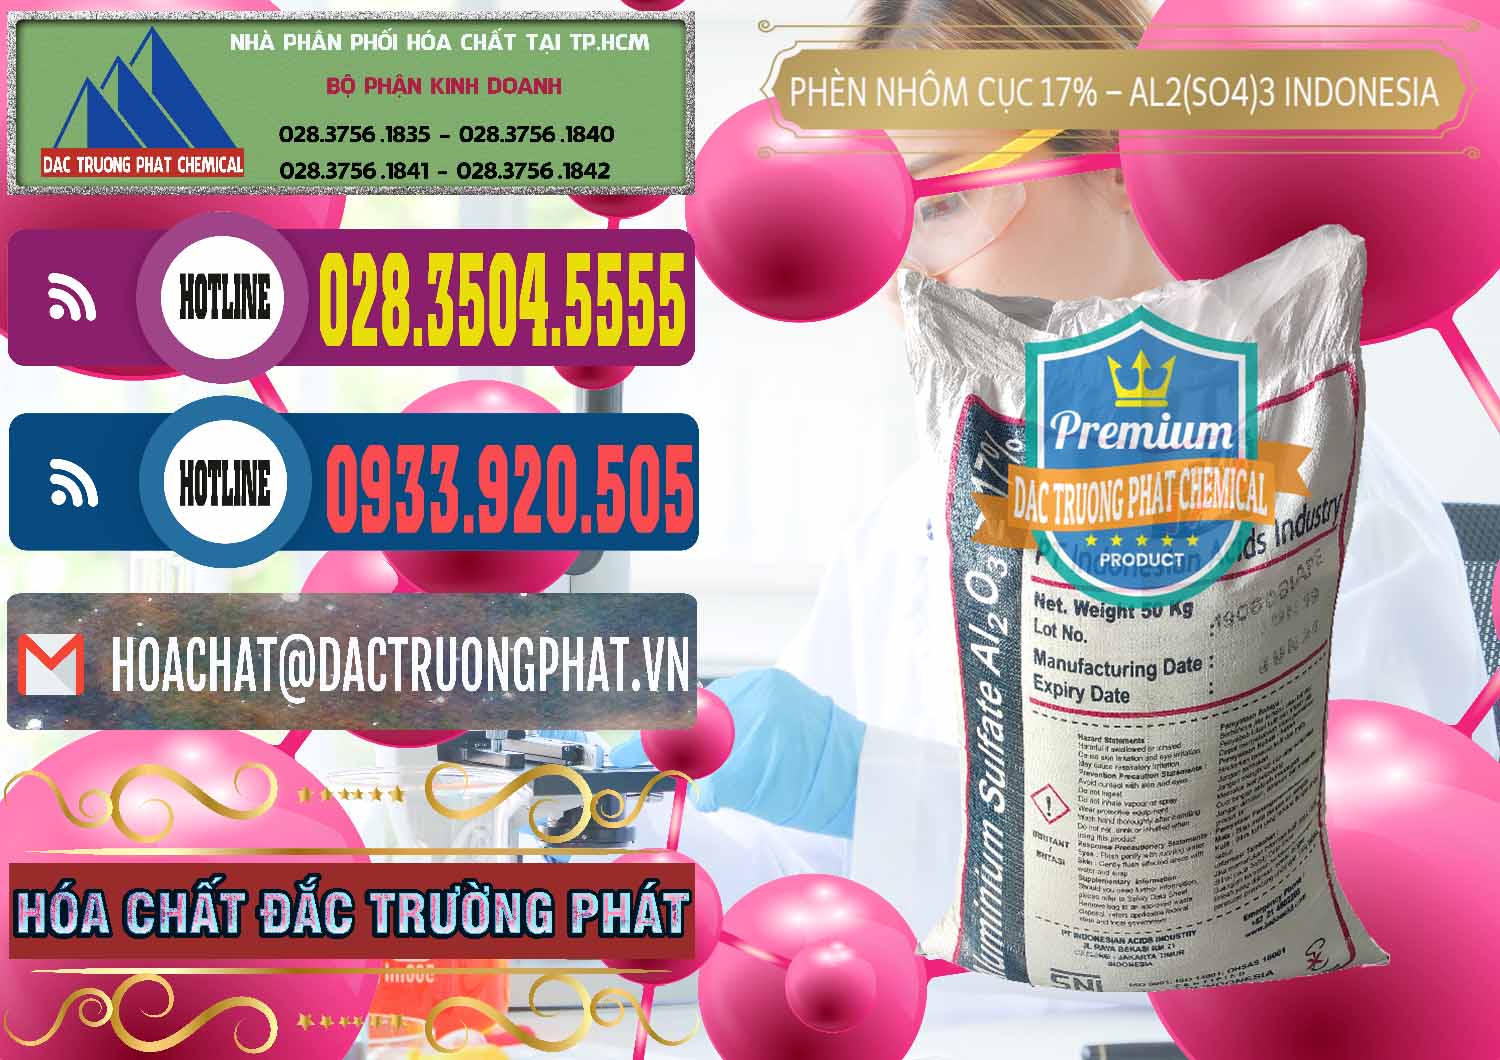 Cty bán & cung ứng Phèn Nhôm Cục - Al2(SO4)3 17% bao 50kg Indonesia - 0113 - Công ty cung cấp - phân phối hóa chất tại TP.HCM - muabanhoachat.com.vn